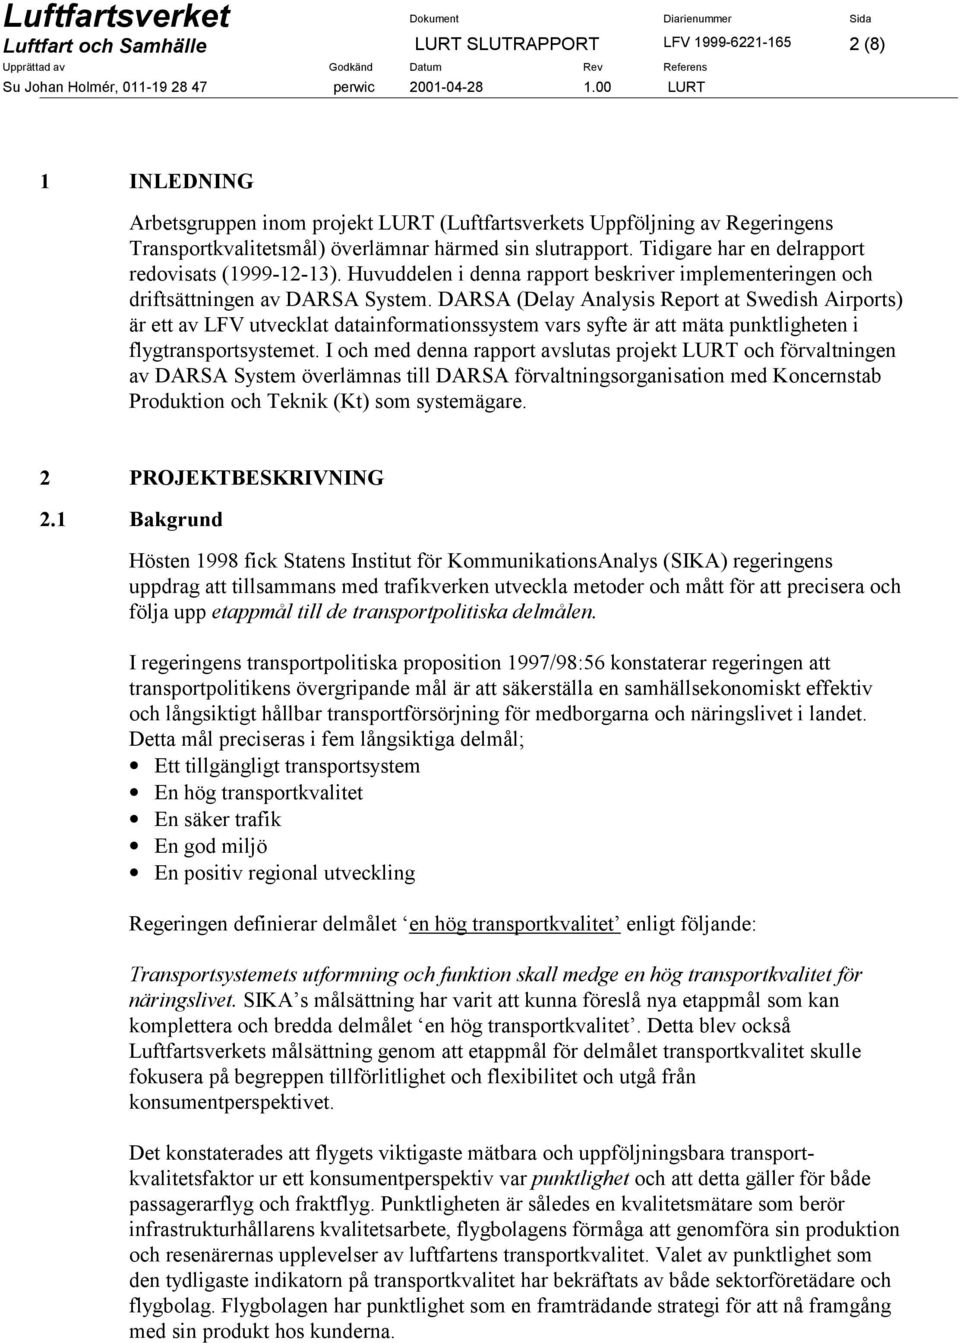 DARSA (Delay Analysis Report at Swedish Airports) är ett av LFV utvecklat datainformationssystem vars syfte är att mäta punktligheten i flygtransportsystemet.